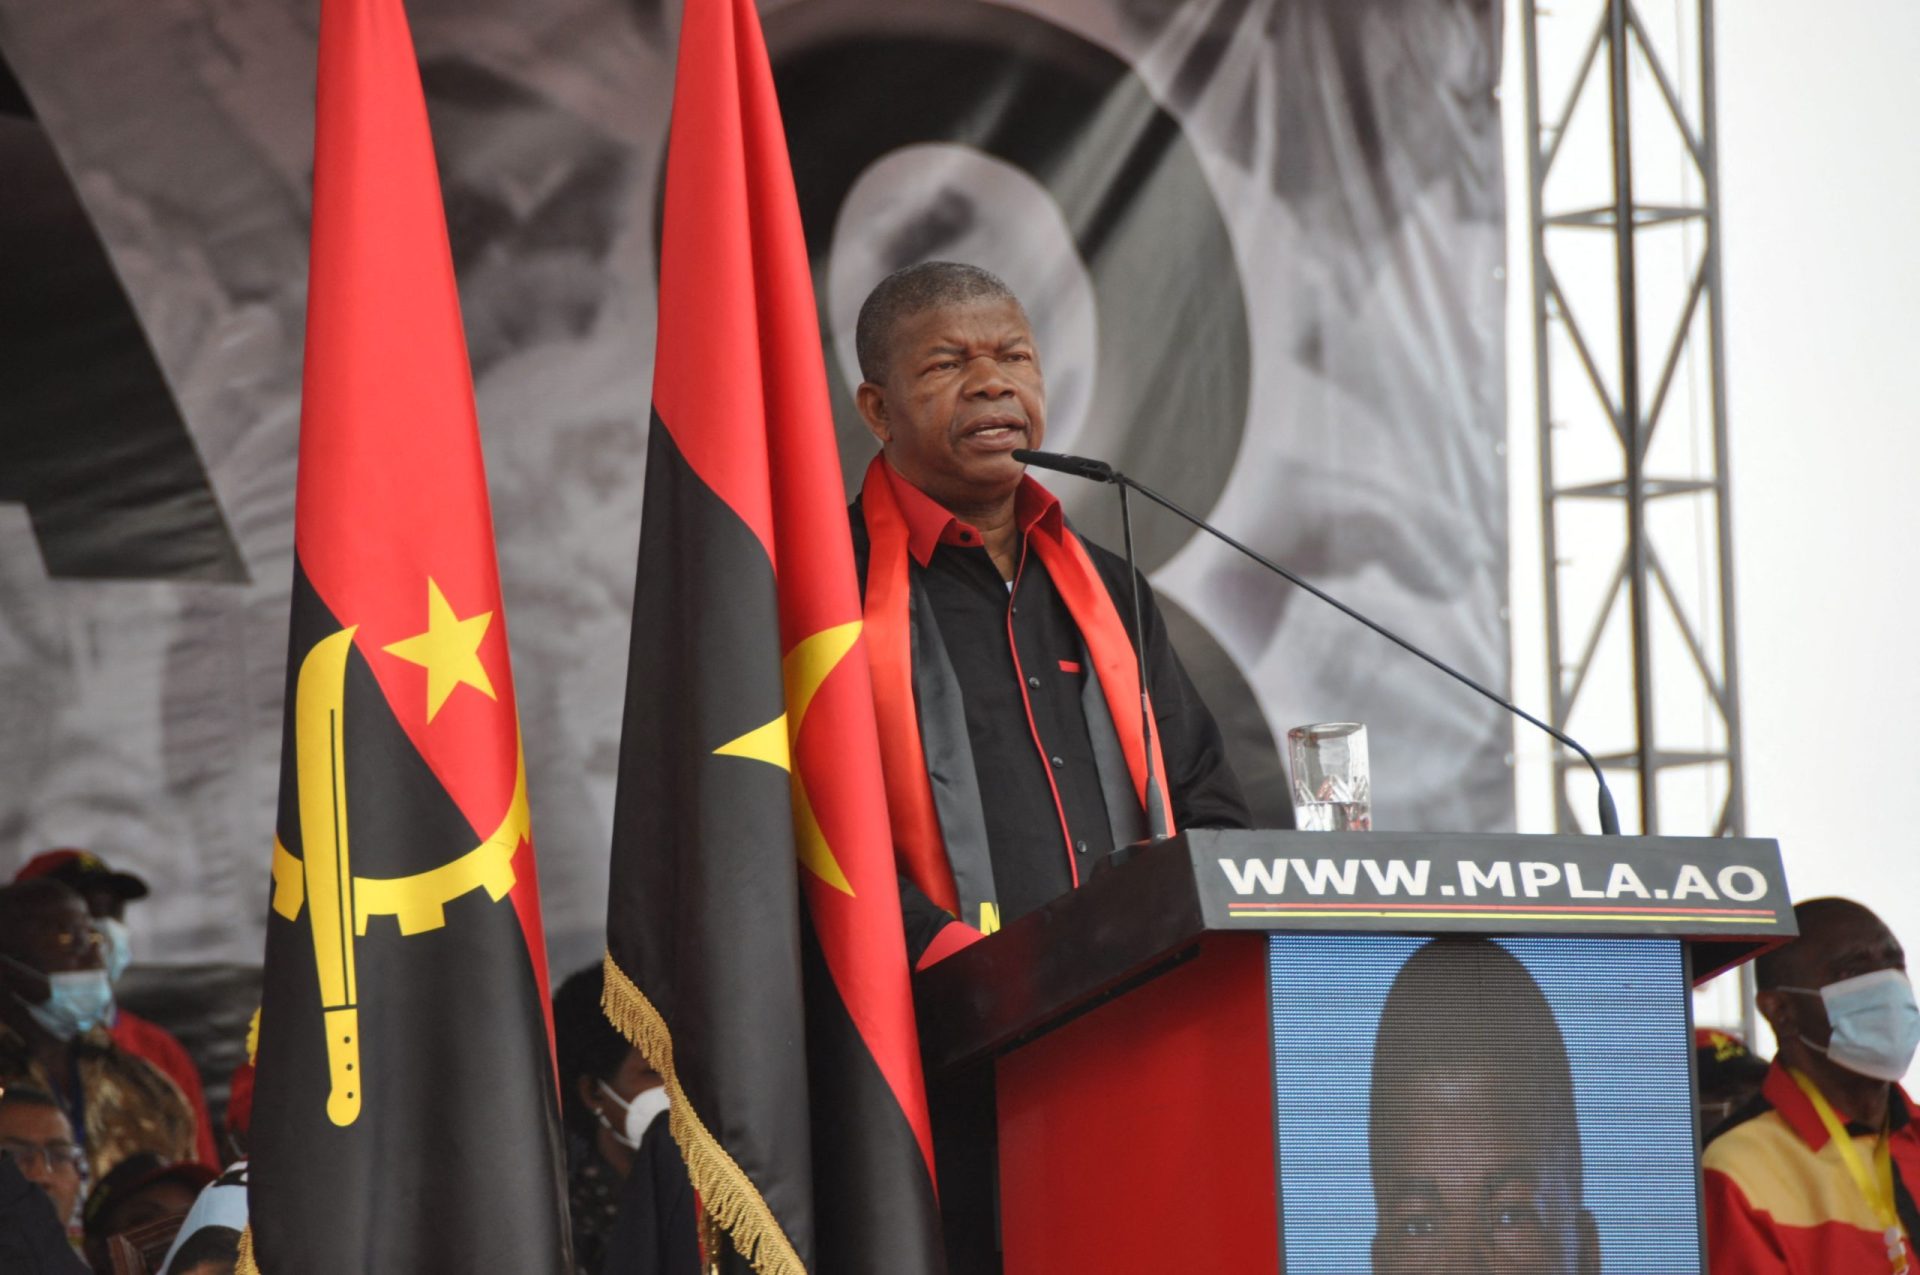 Resultados oficiais nas eleições de Angola: MPLA vence com 51,17% e UNITA em segundo lugar com 43,95%